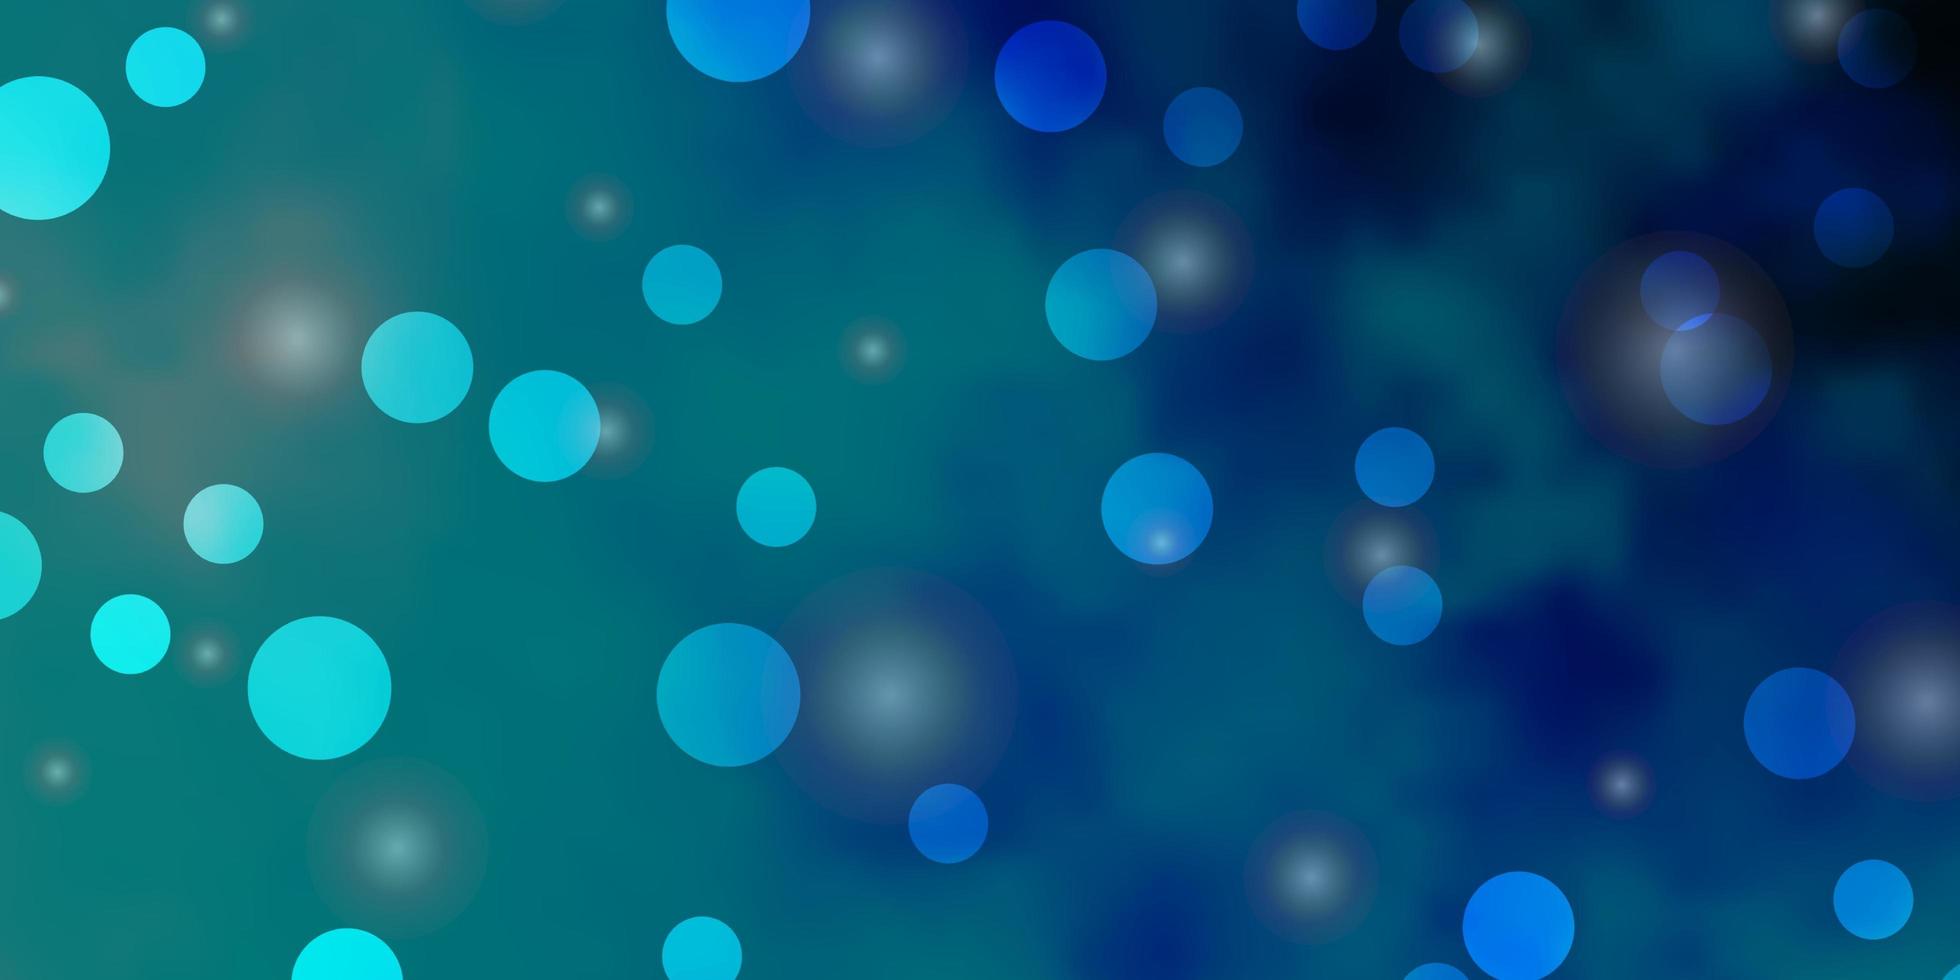 ljusblå vektorlayout med cirklar stjärnor glitter abstrakt illustration med färgglada droppar stjärnor mönster för webbplatser vektor